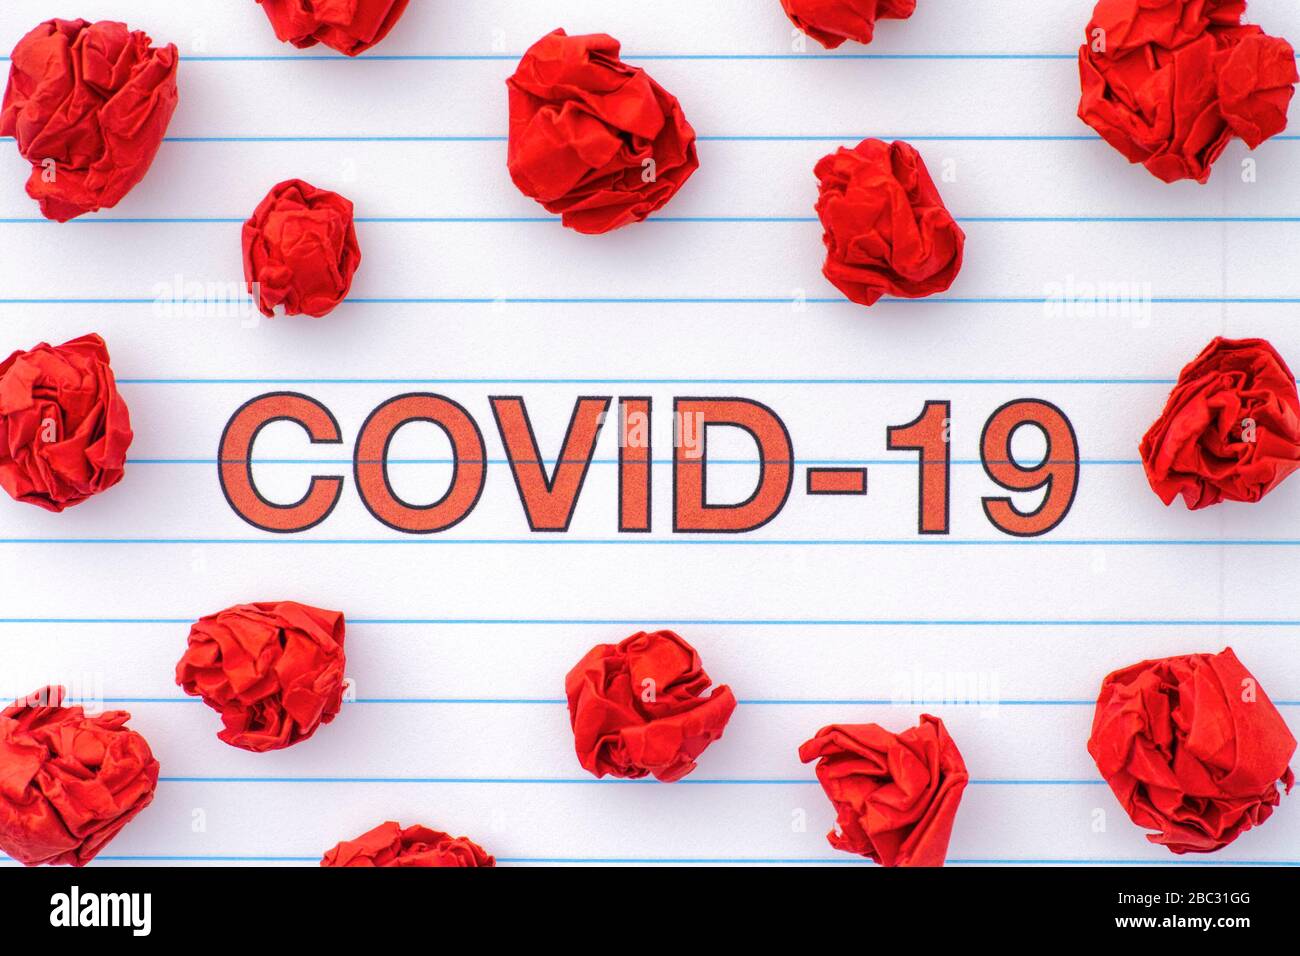 COVID-19 e palline di carta sbriciolate rosse. Concetto di coronavirus. Primo piano. Foto Stock